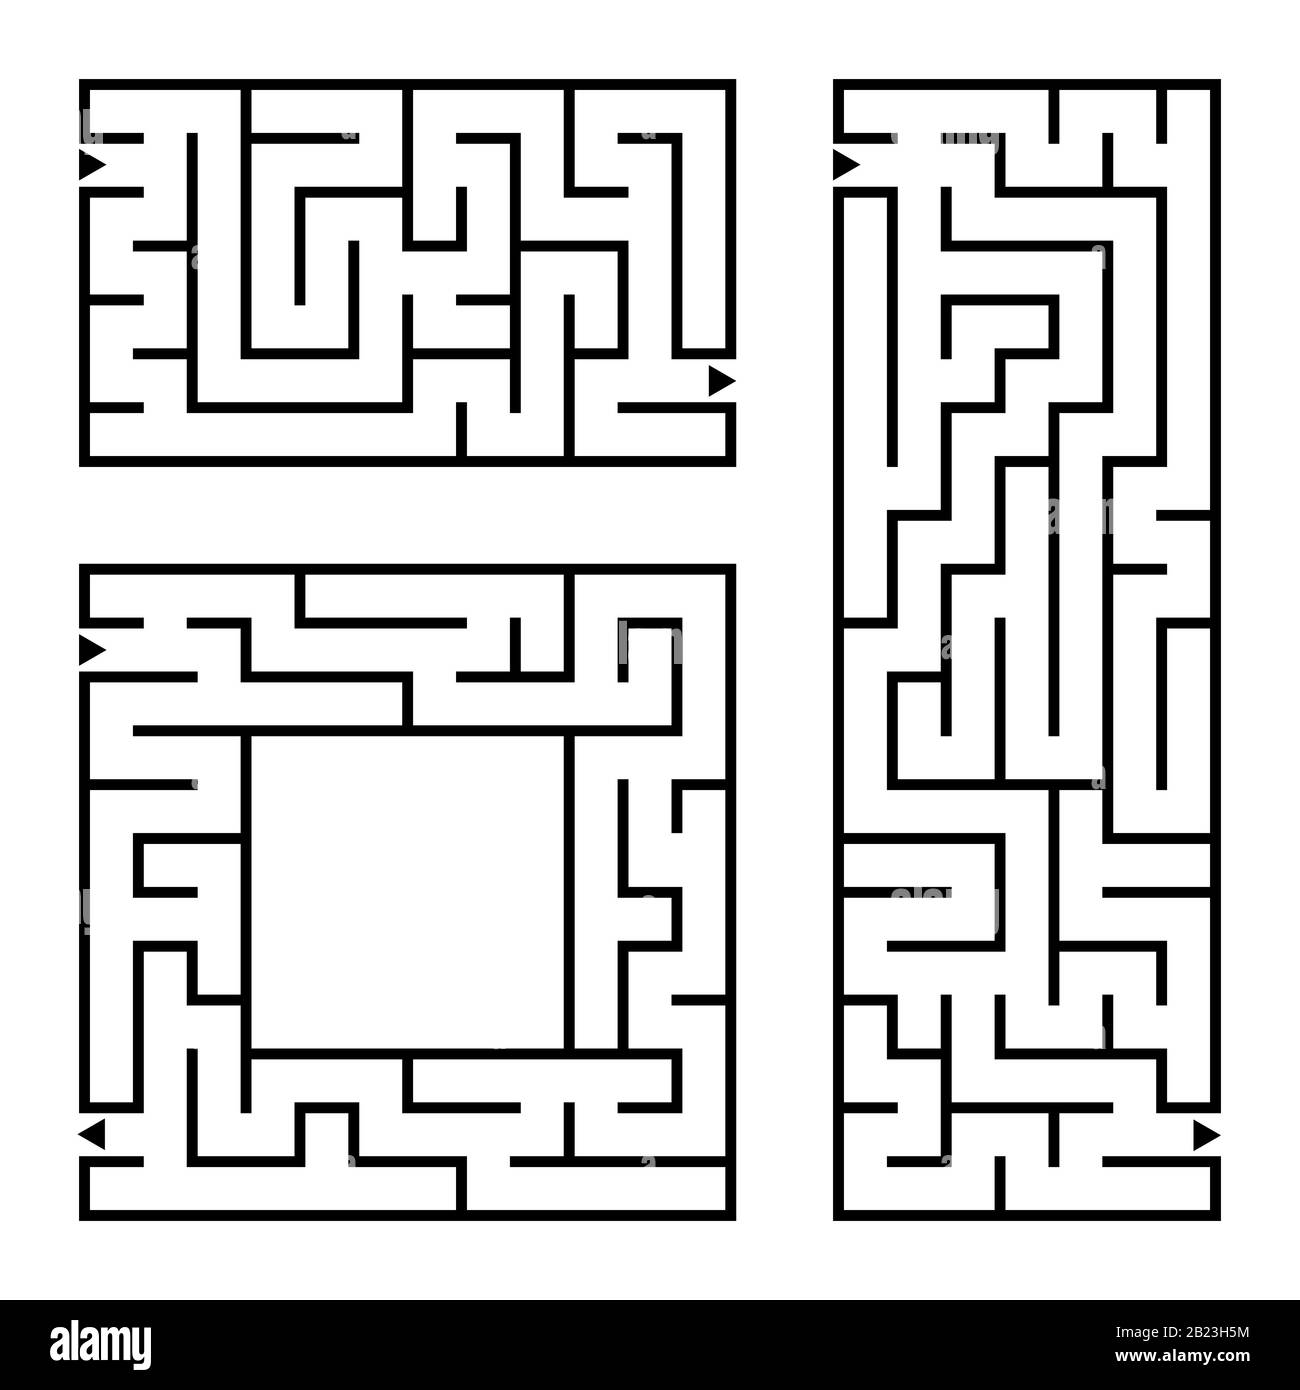 Una serie di labirinti quadrati e rettangolari con ingresso ed uscita. Semplice immagine vettoriale piatta isolata su sfondo bianco Illustrazione Vettoriale